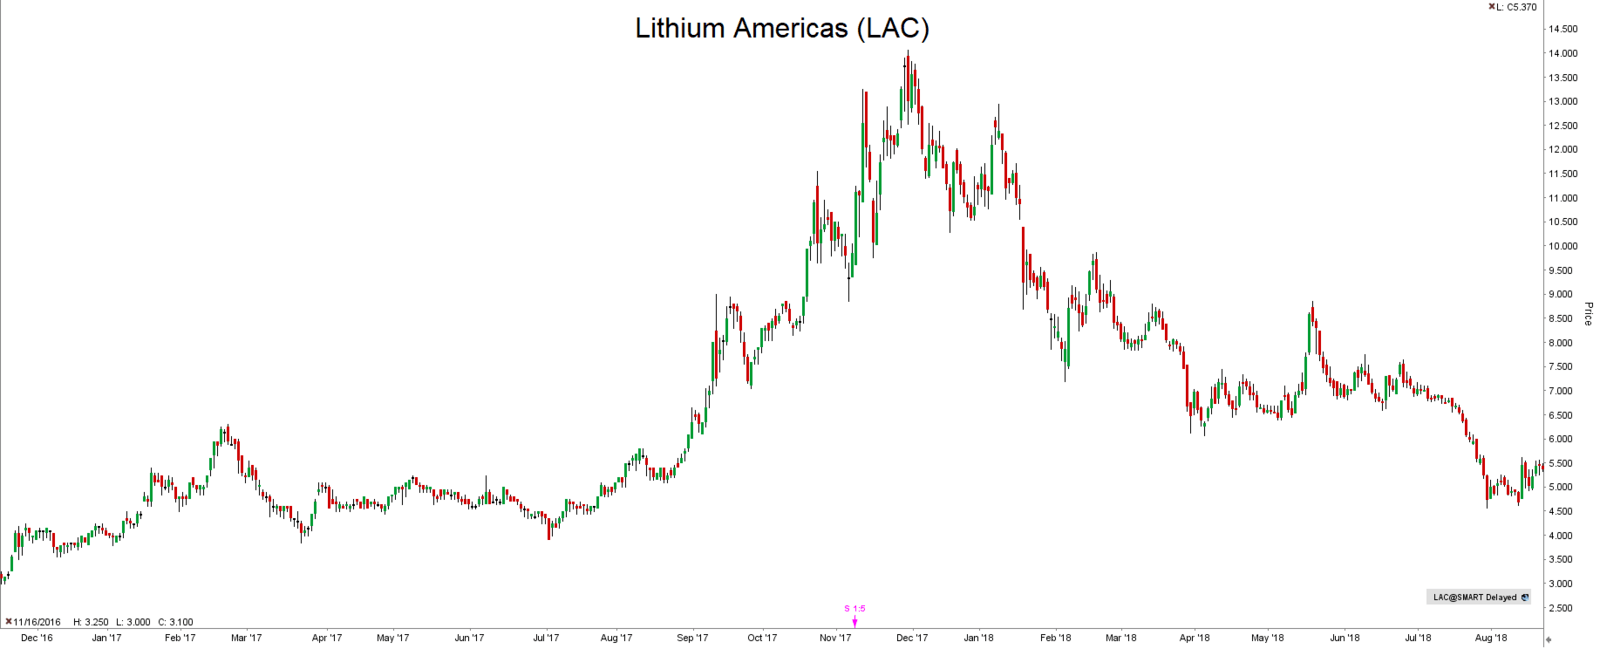 Inwestycje w lit Lithium Americas LAC